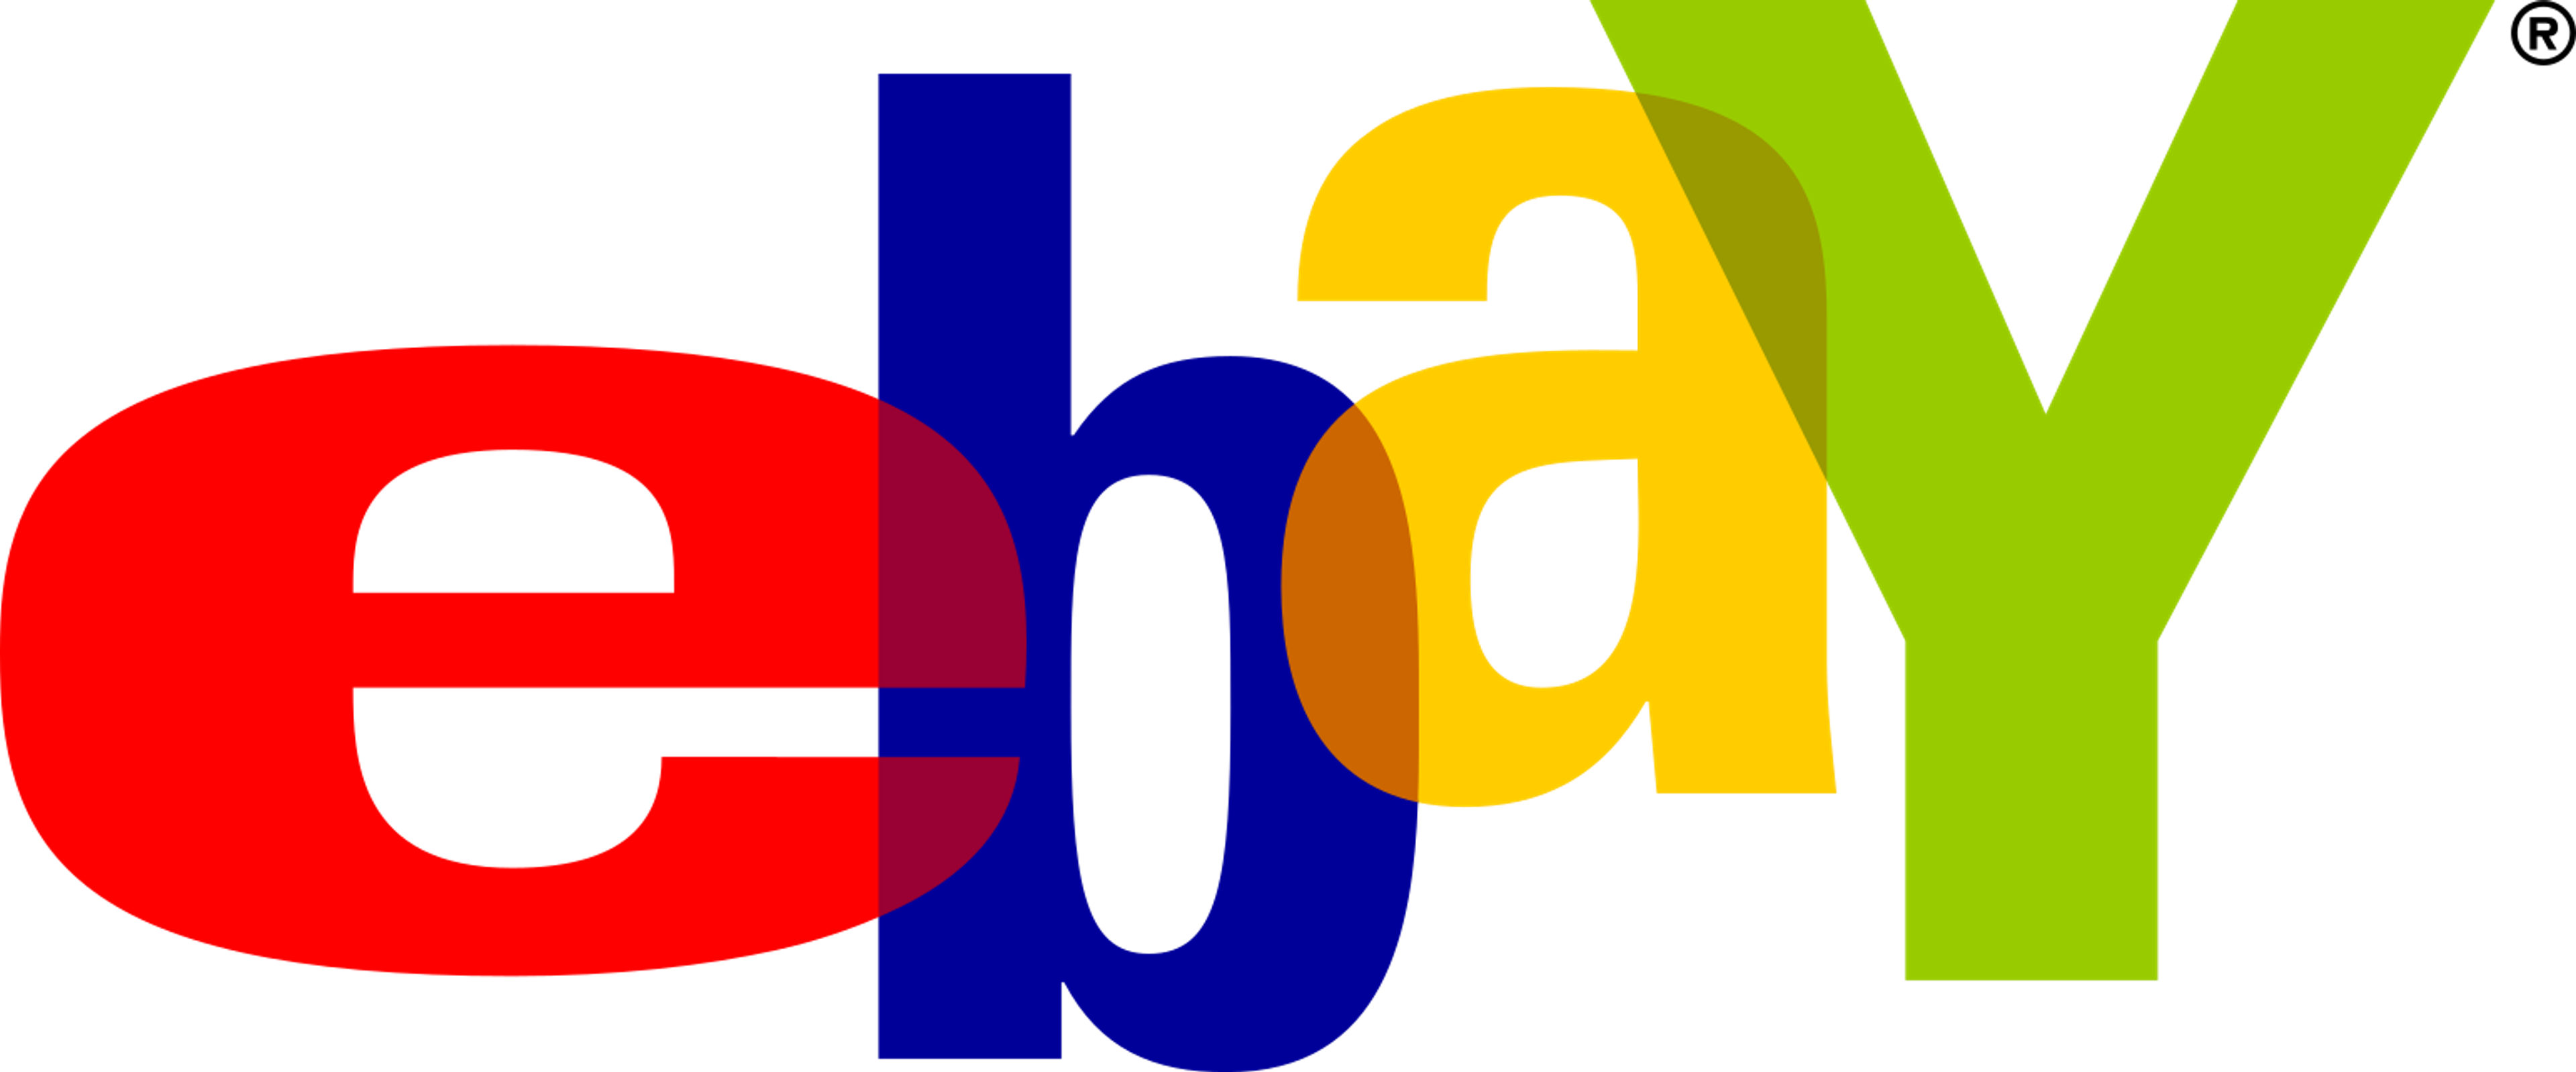 1999-2012